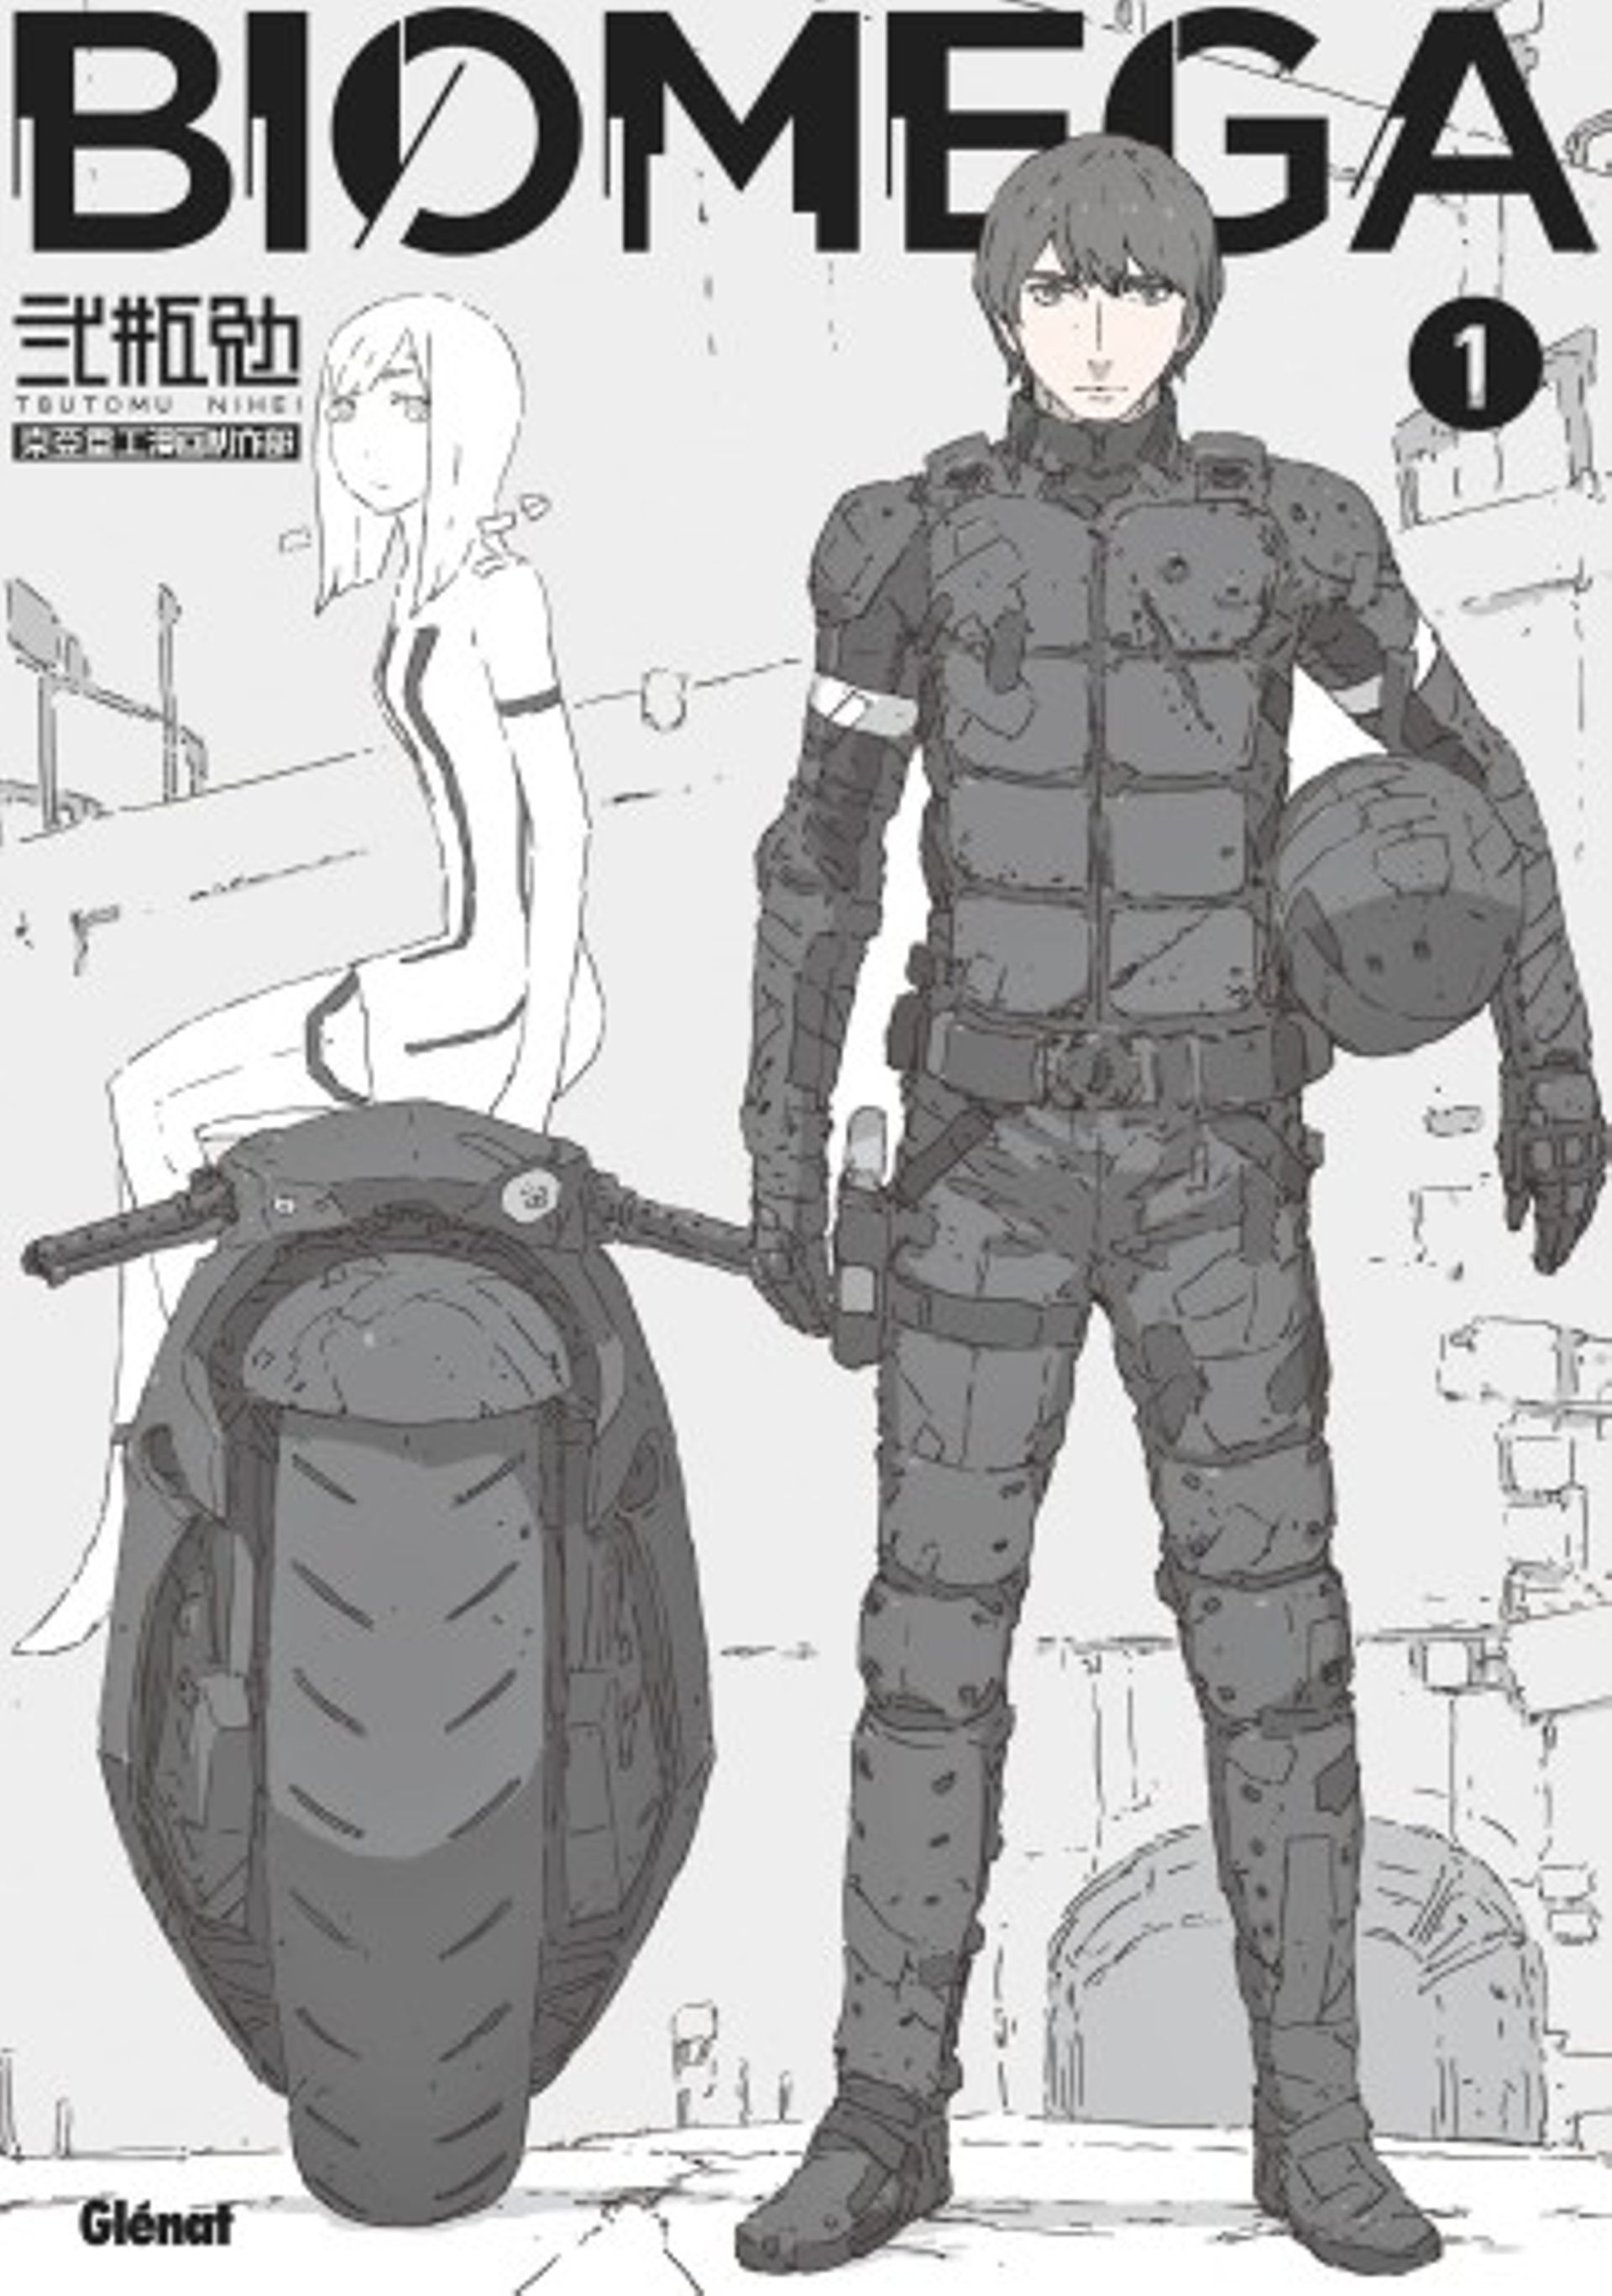 Première de couverture du manga "Biomega" édité chez Glénat.